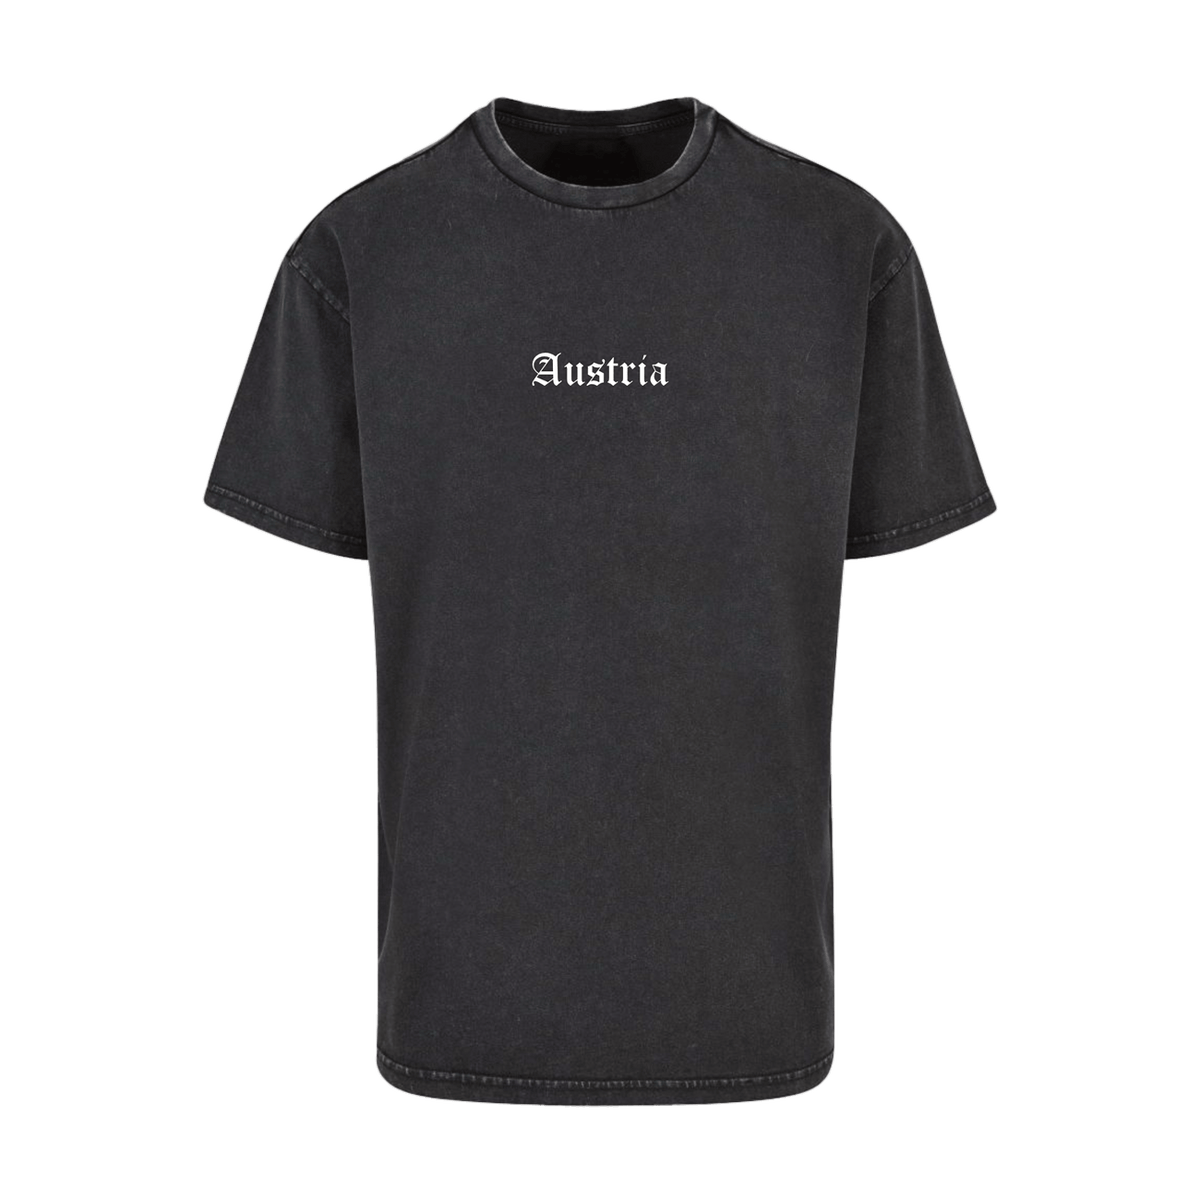 Austria Herren T-Shirt Streetstyle